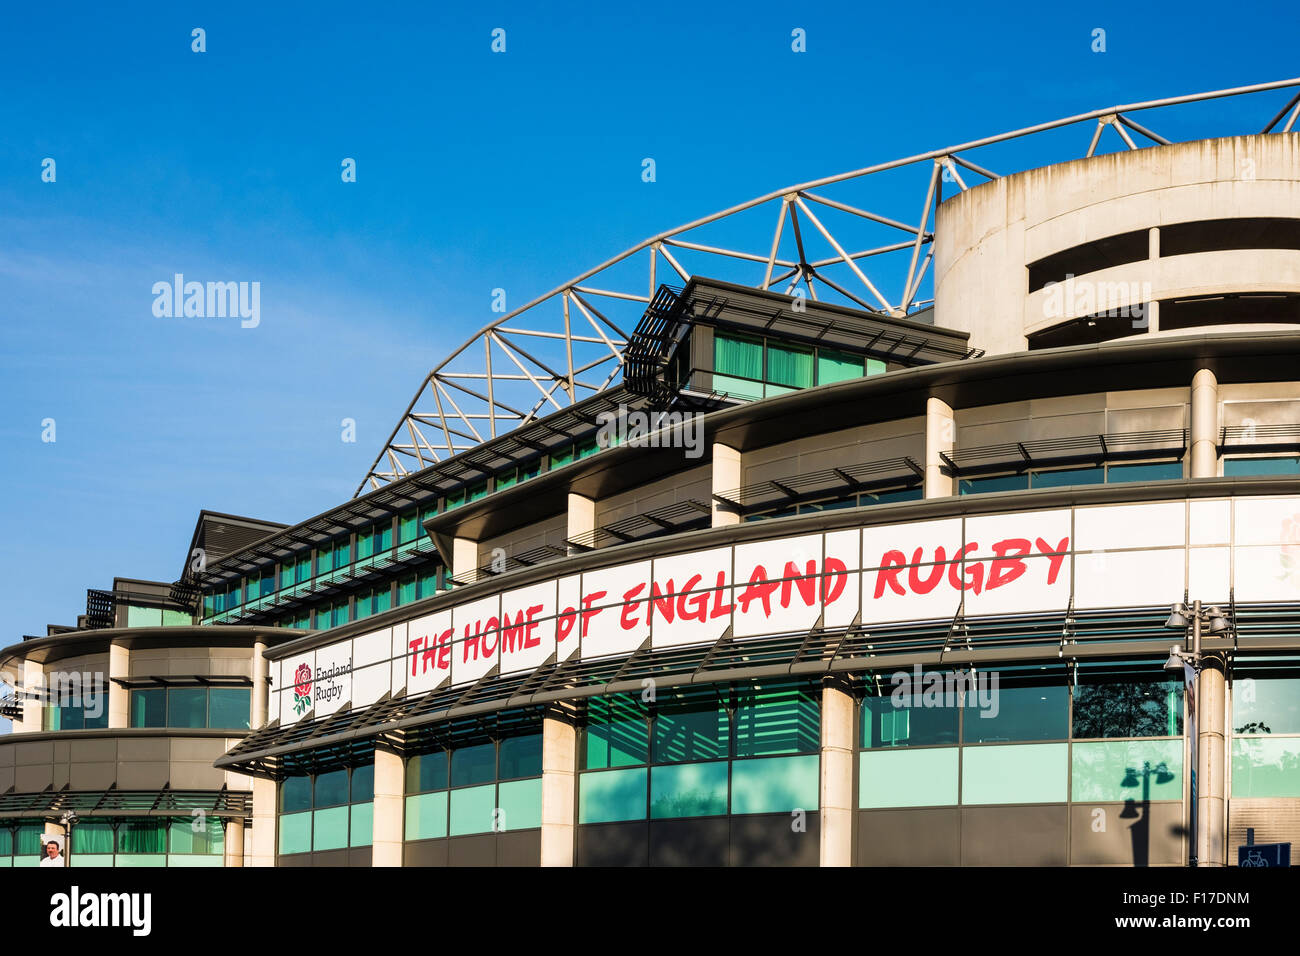 Le stade de rugby de Twickenham, London, Angleterre, Royaume-Uni Banque D'Images